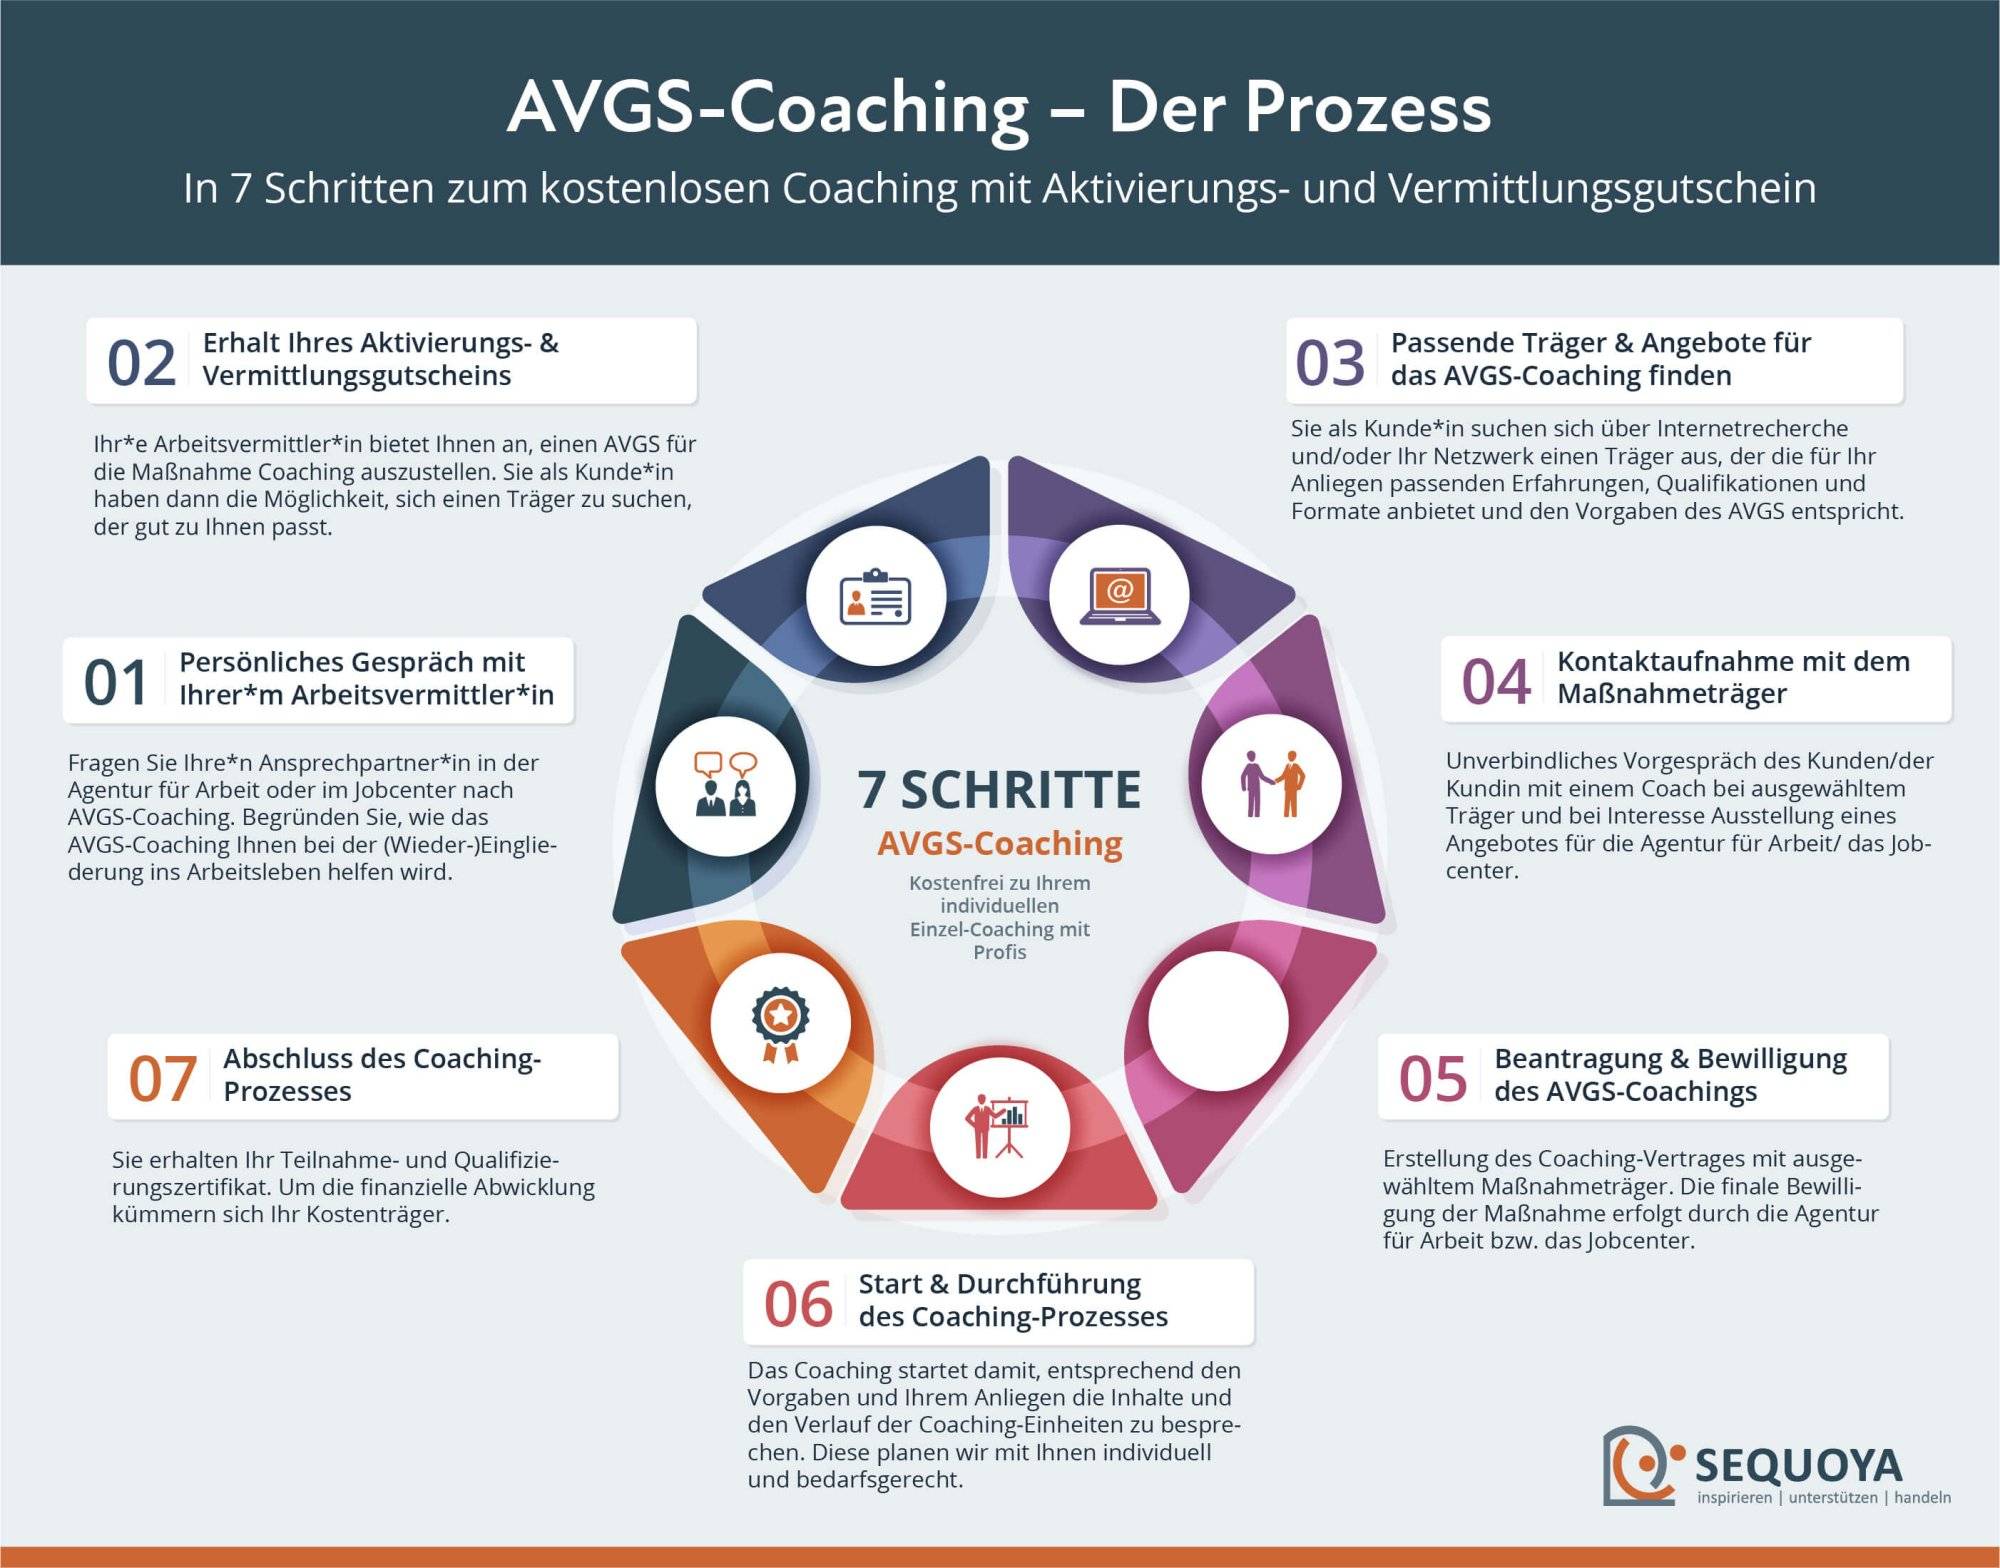 AVGS-Coaching Prozess (7 Schritte)